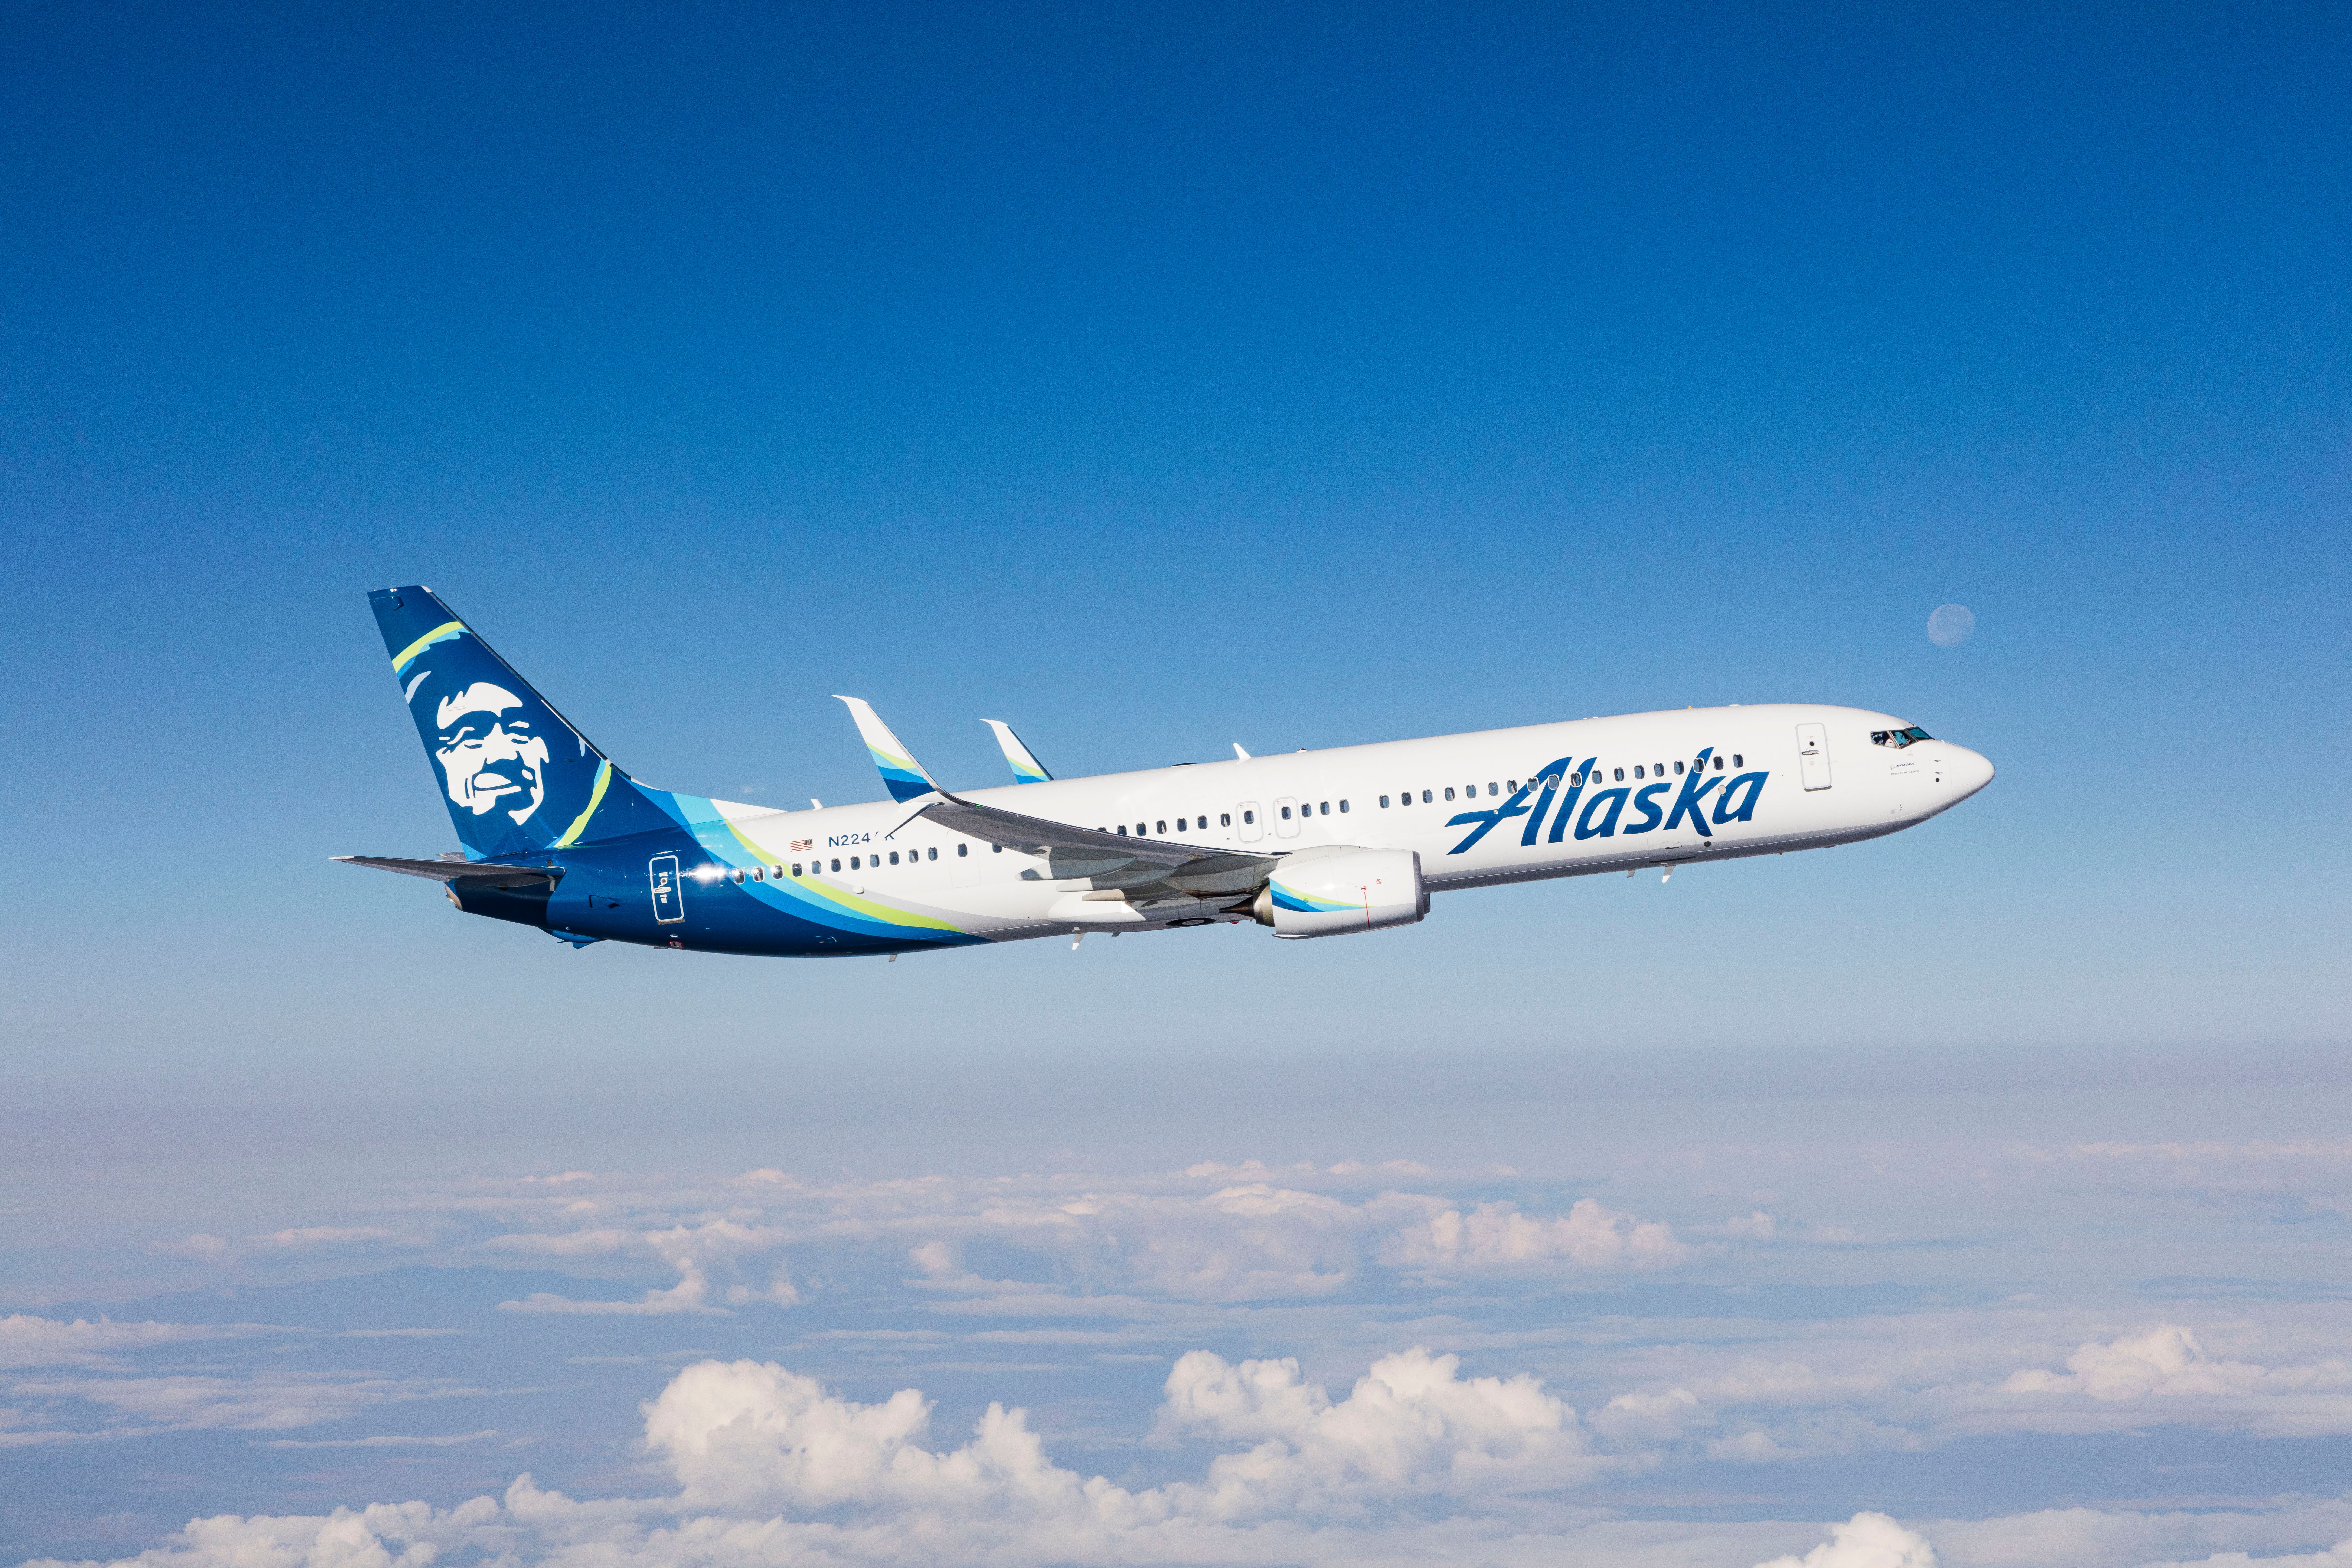 SF_air-to-air_001 - air-to-air with Alaska Airlines 737 